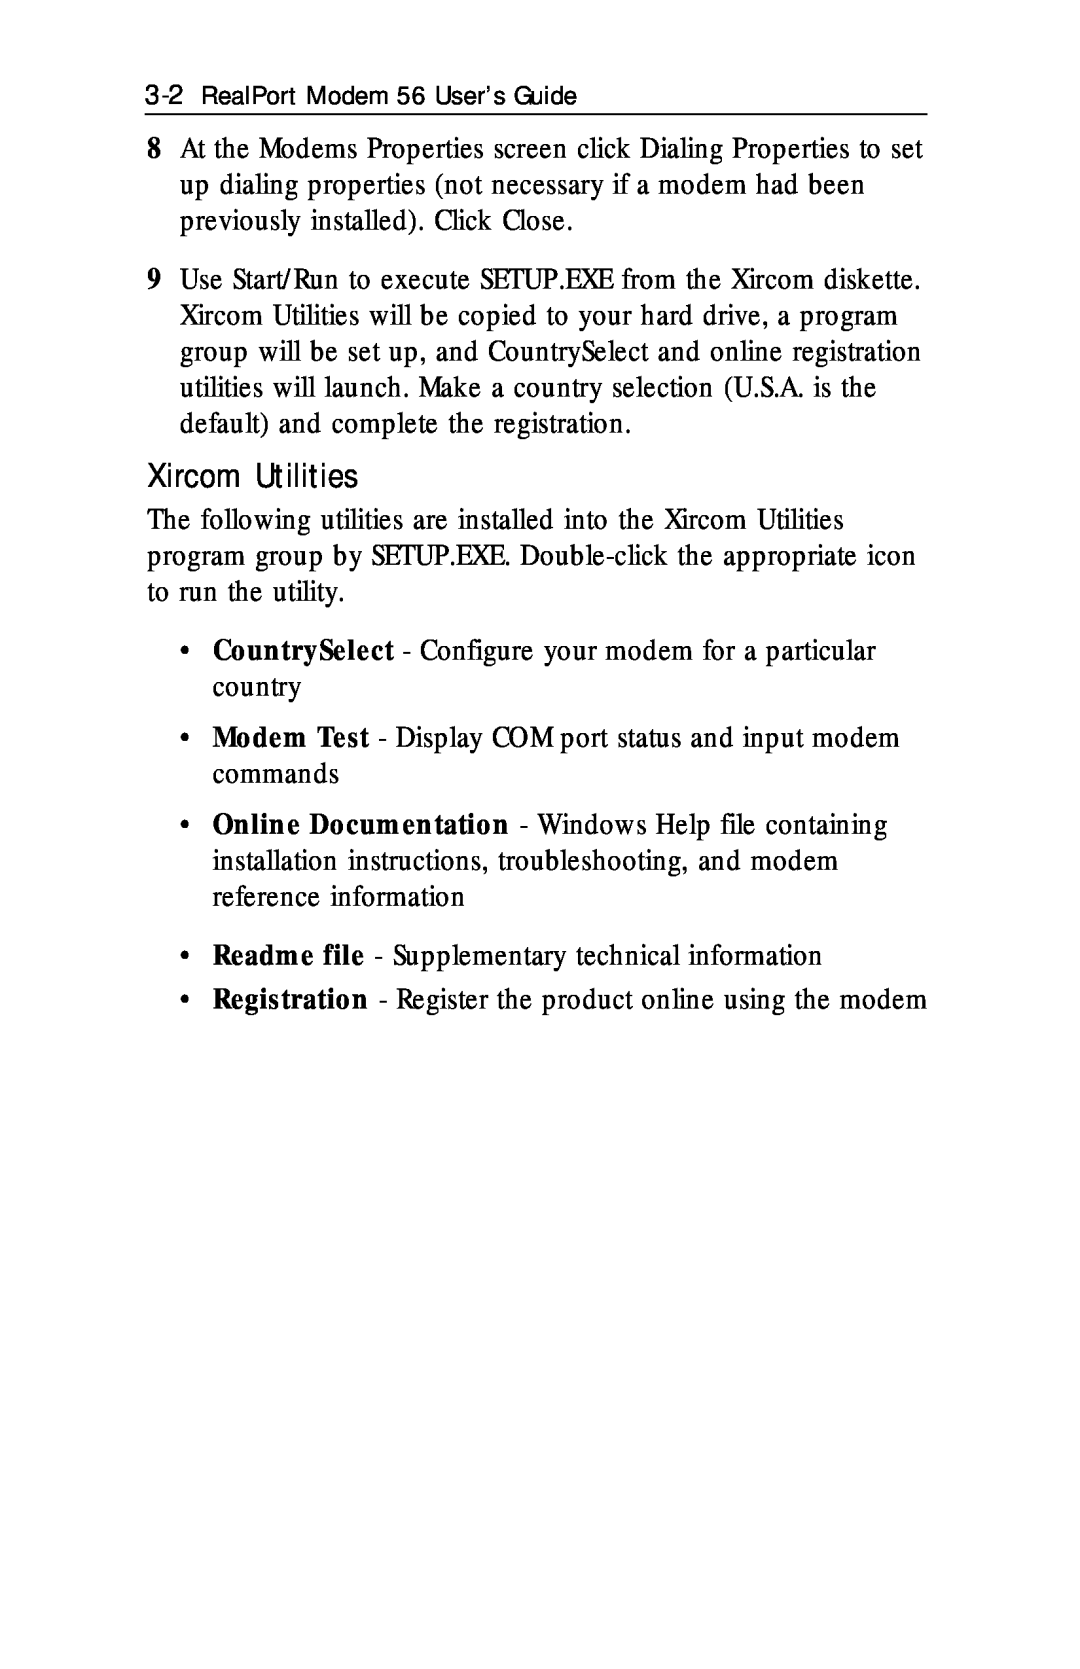 Xircom RM56V1 manual Xircom Utilities, RealPort Modem 56 User’s Guide 